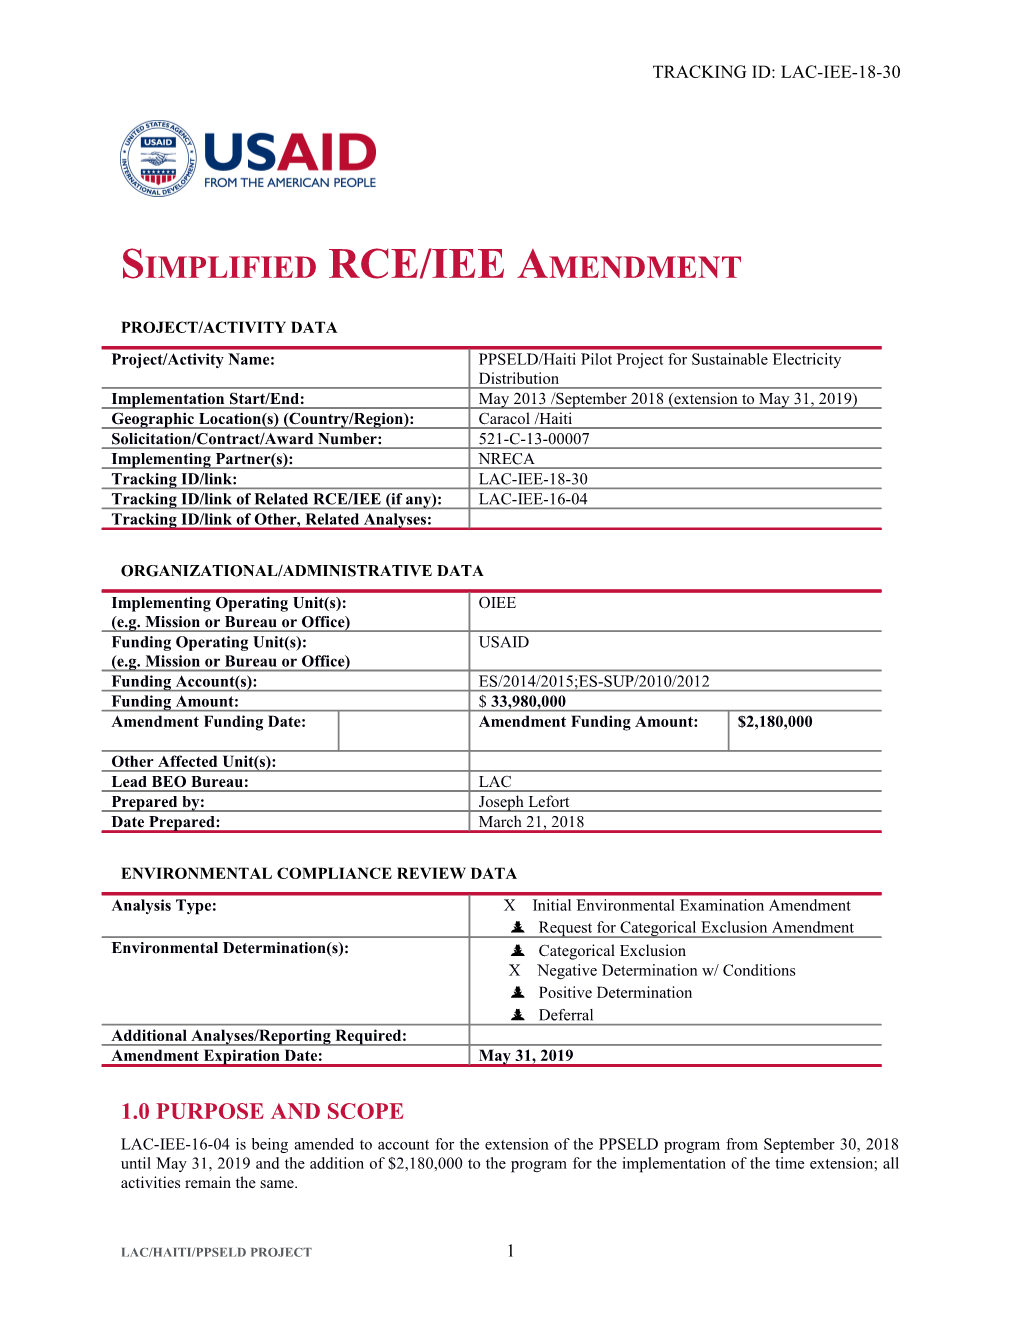 Simplified RCE/IEE Amendment